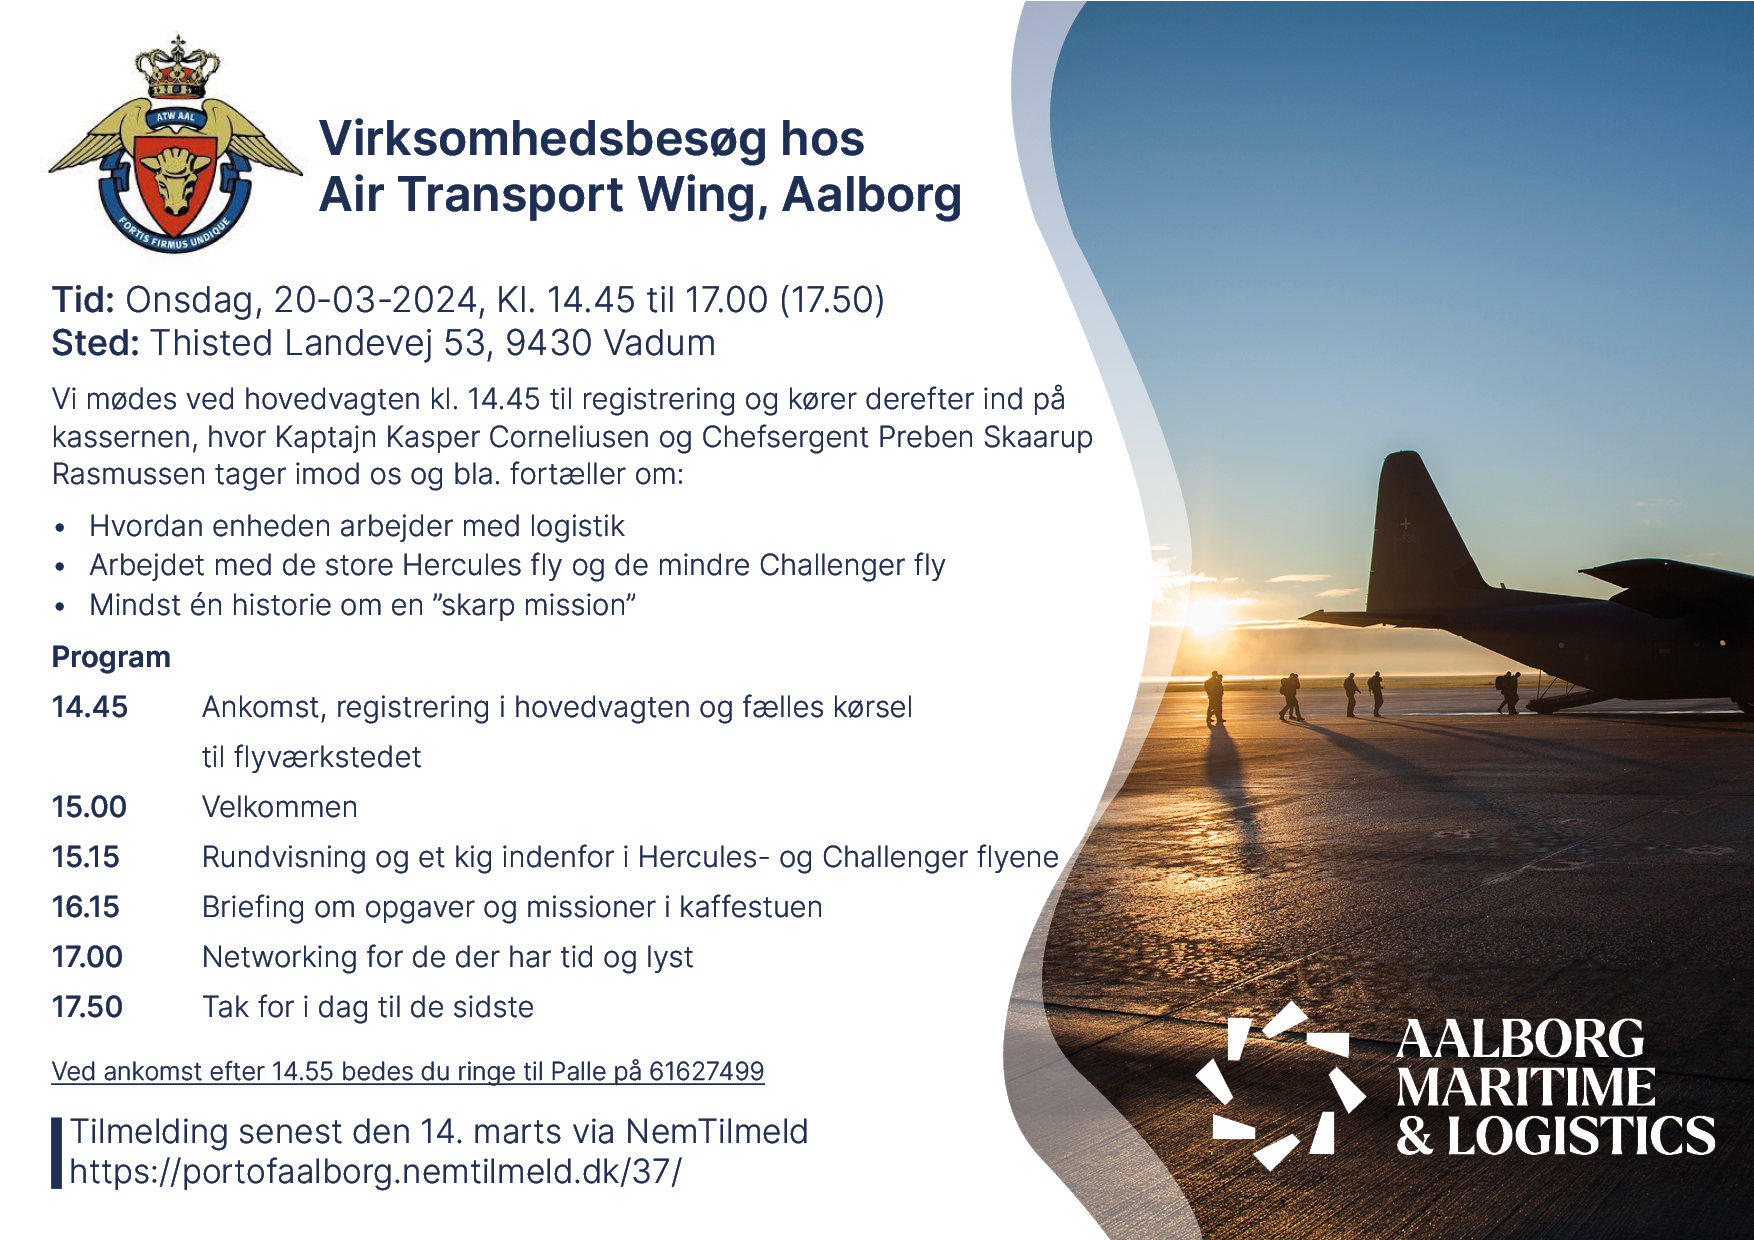 Virksomhedsbesøg hos Air Transport Wing, Aalborg